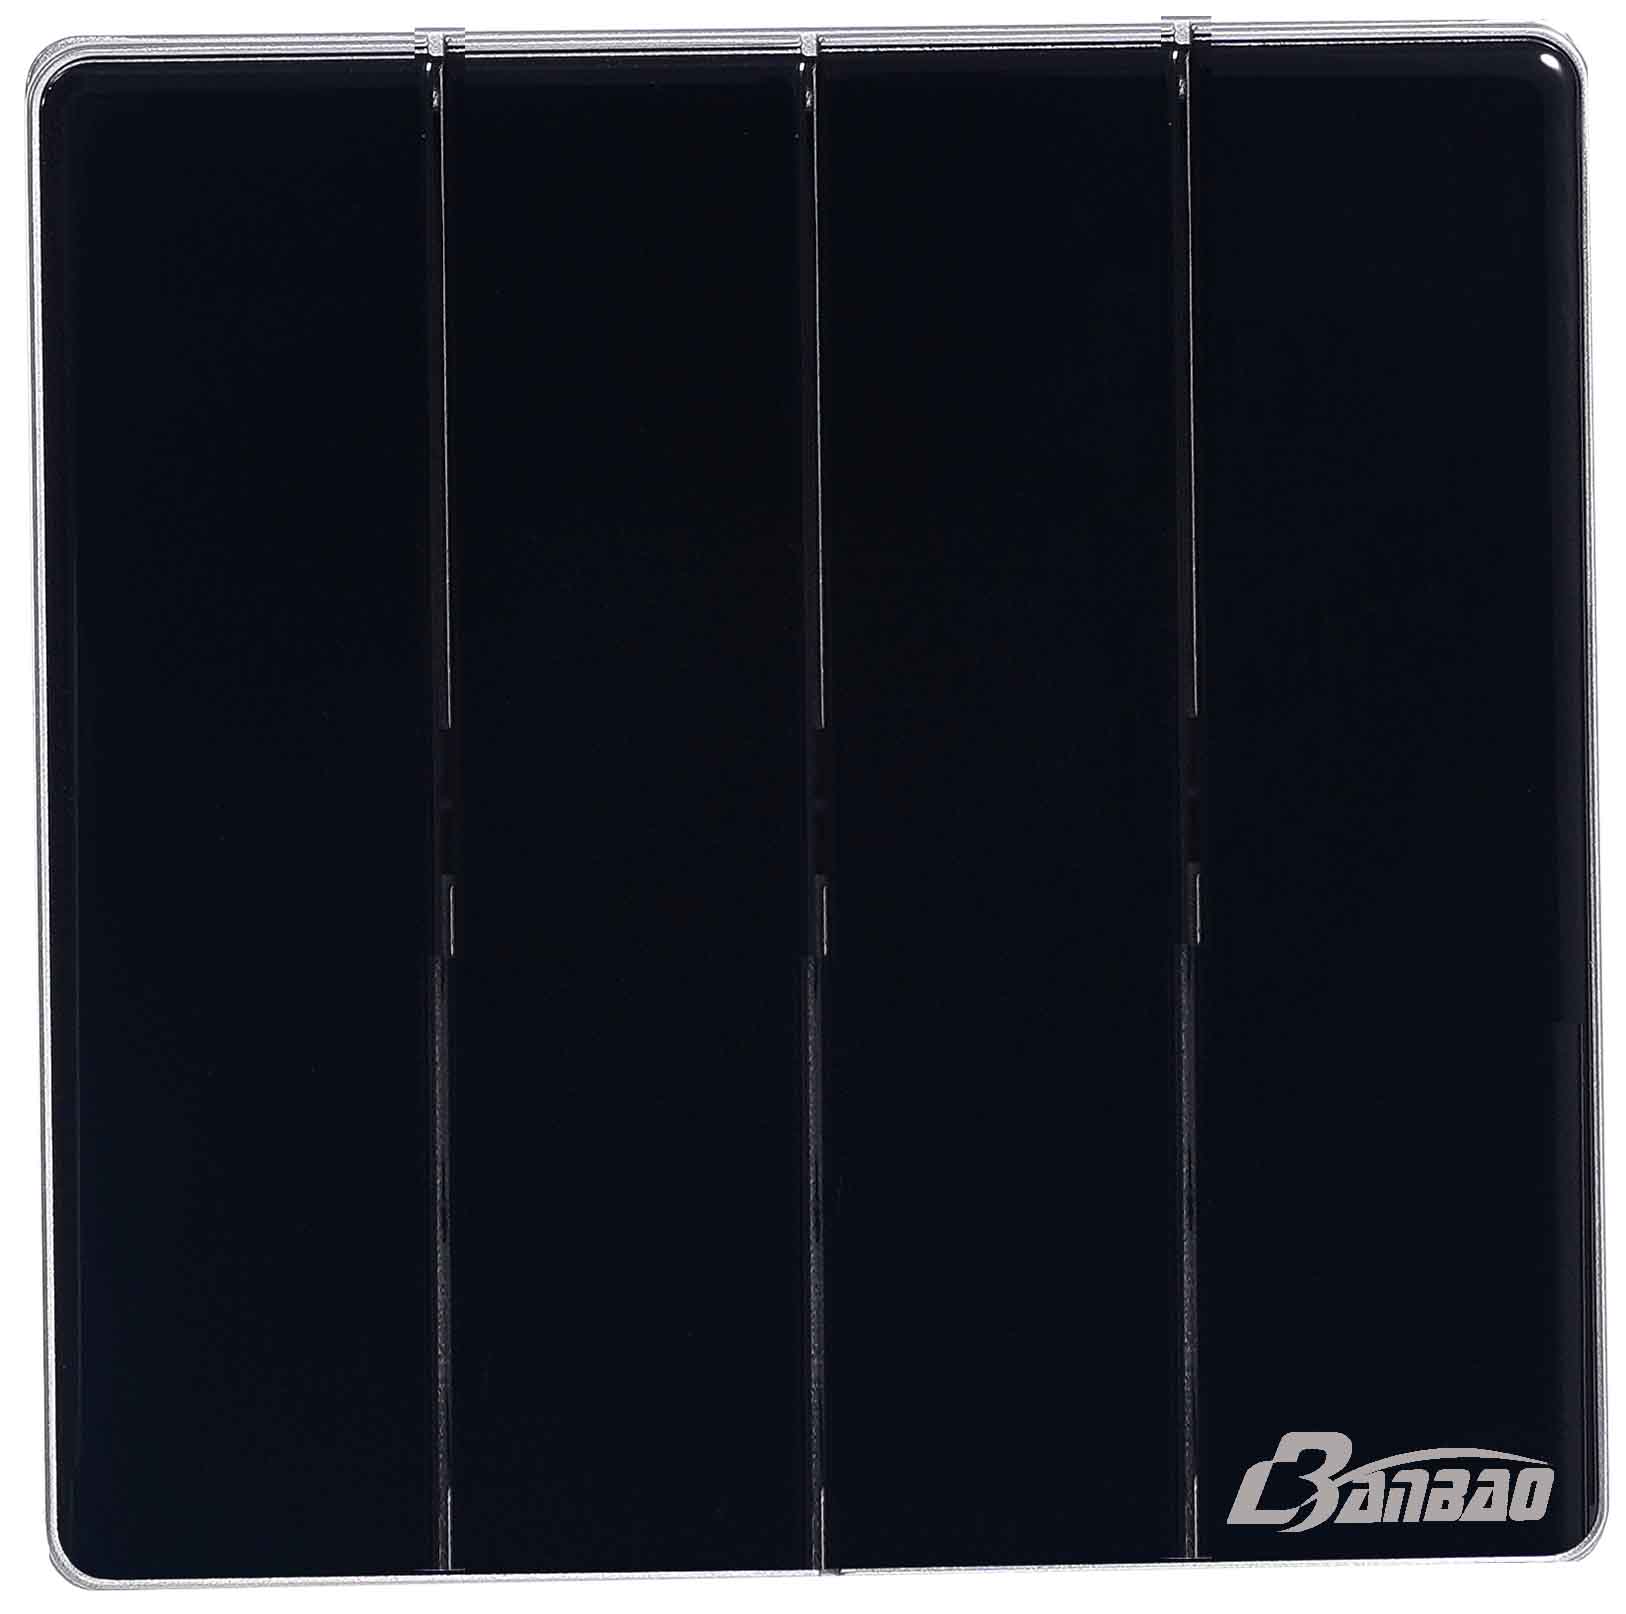 4गैंग 1वे 10/16ए वॉल स्विच काला रंग ग्लास पैनल बड़ा बटन